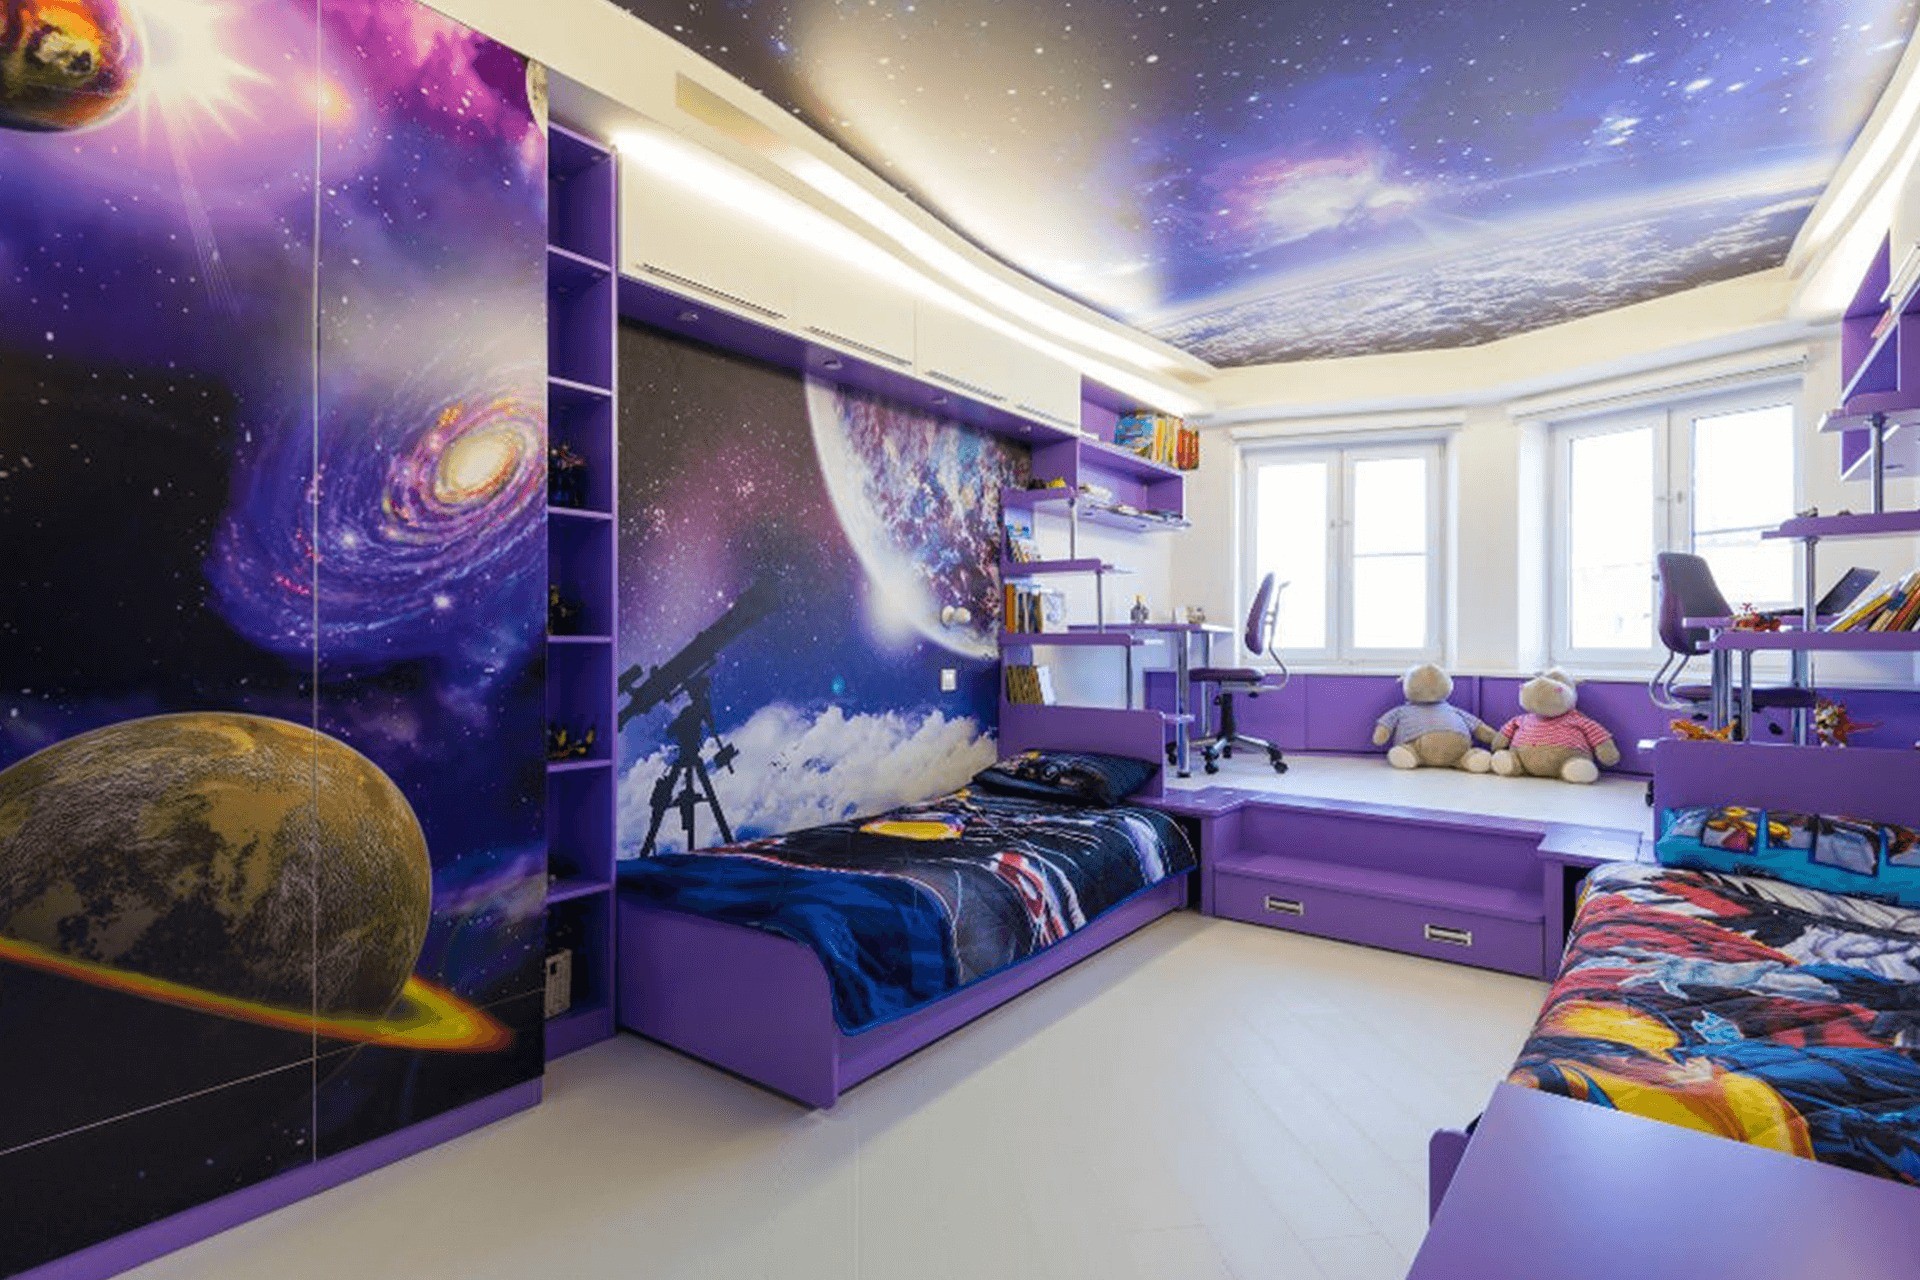 Обои космос в комнату: отделка детской спальни и других вариантов, фото  дизайна